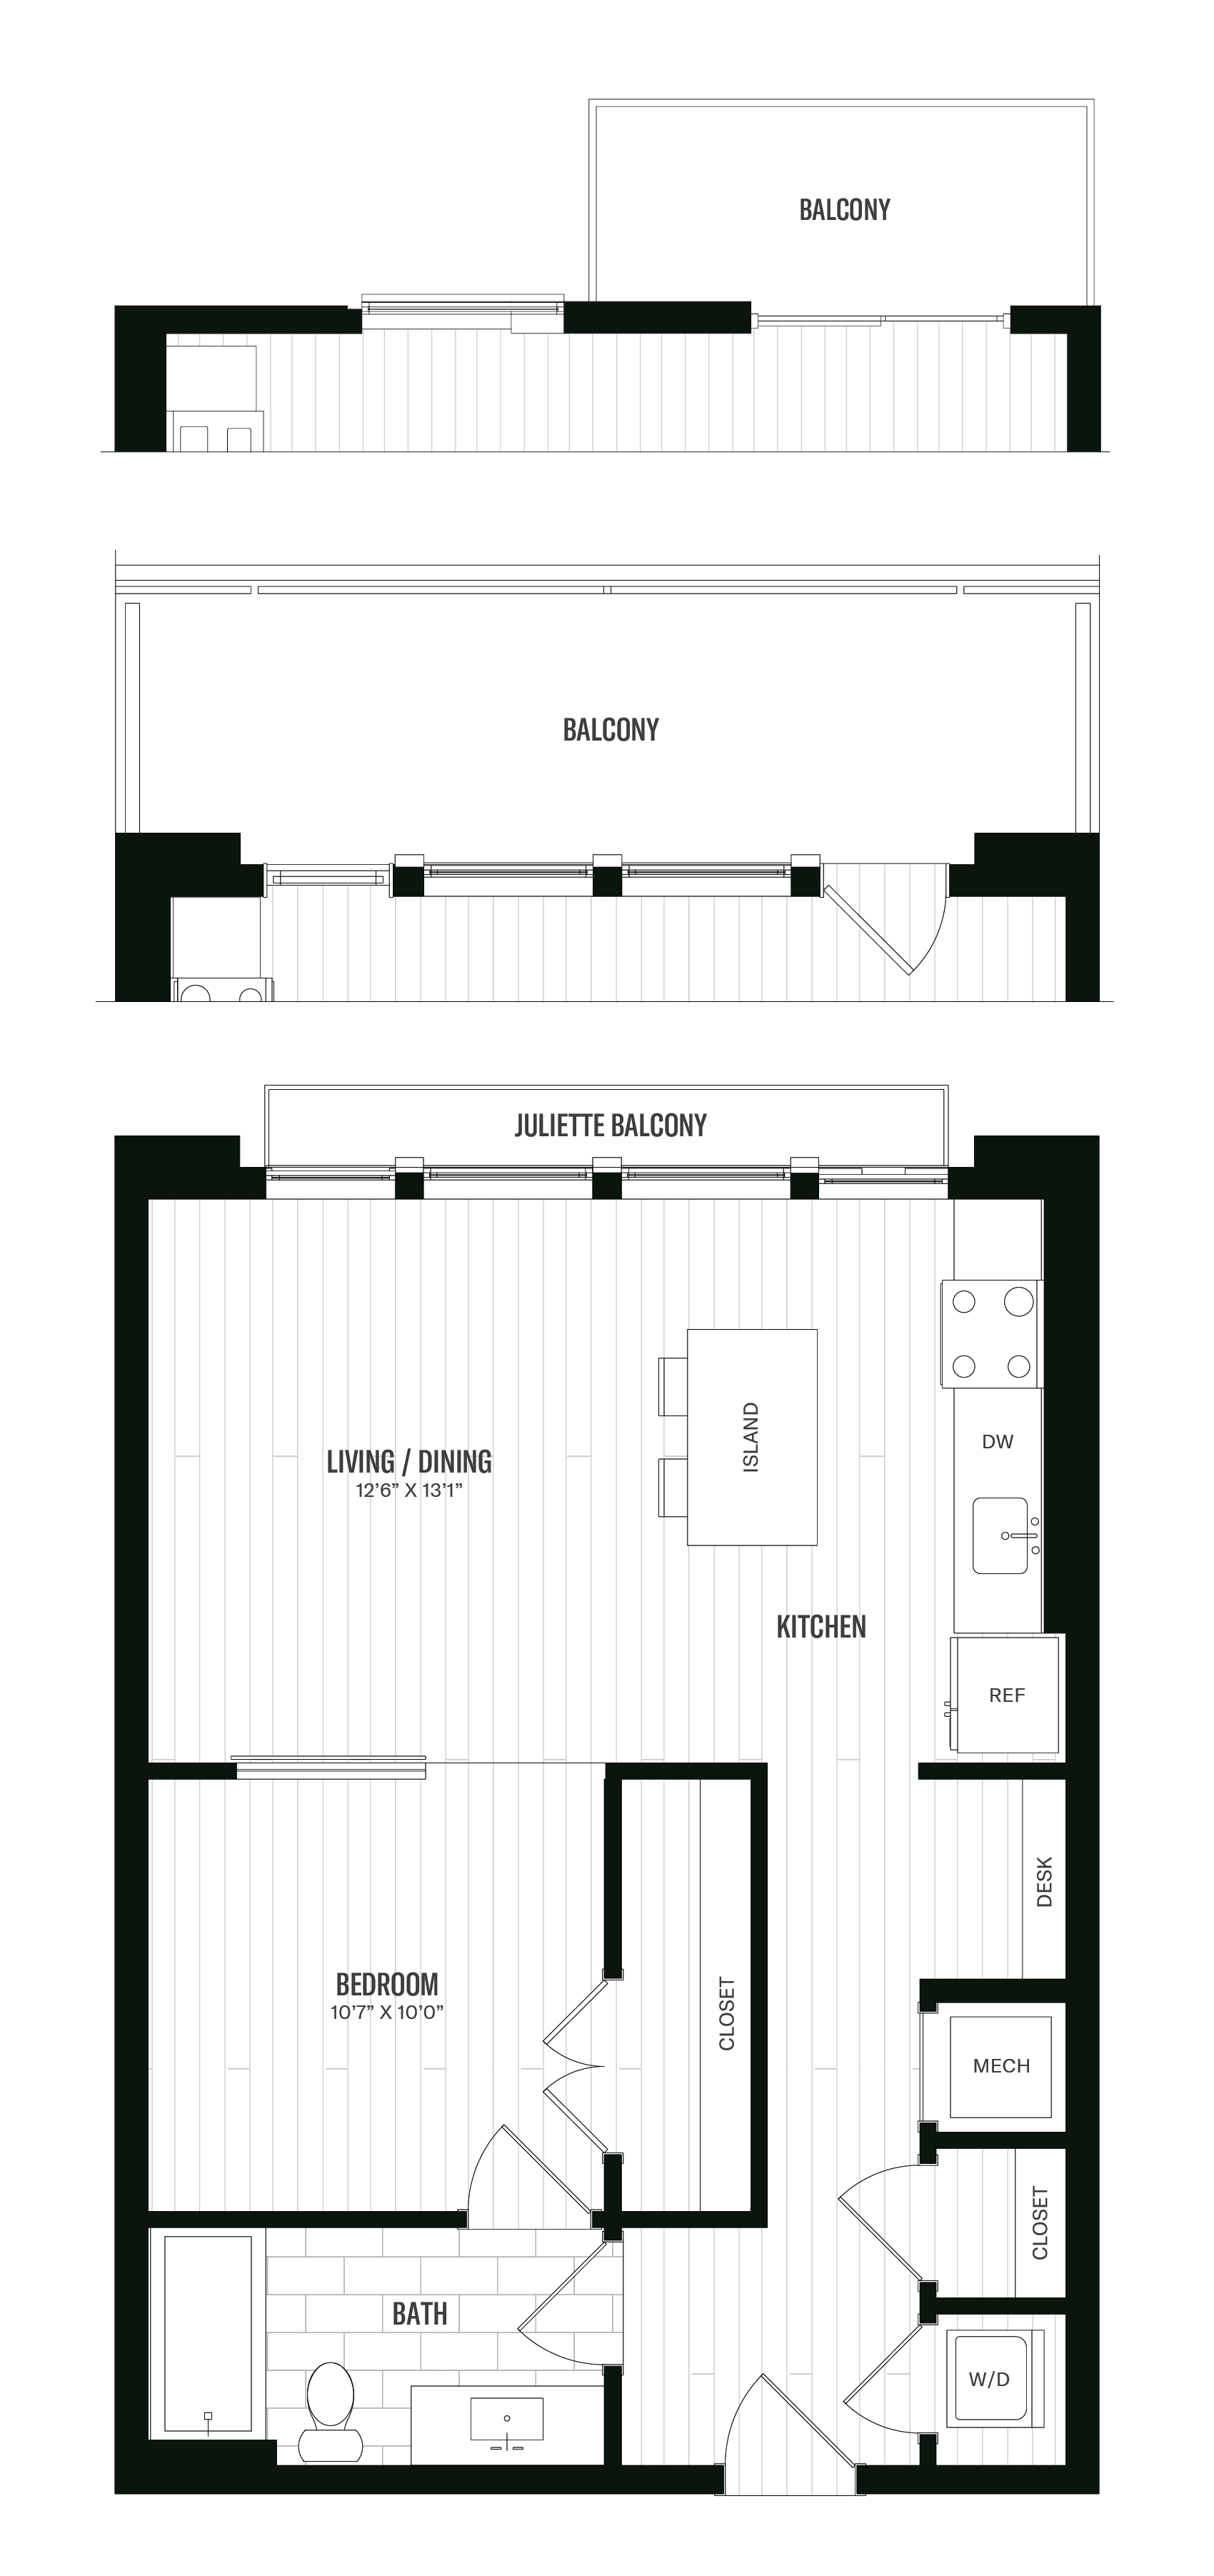 Floorplan image of unit 411